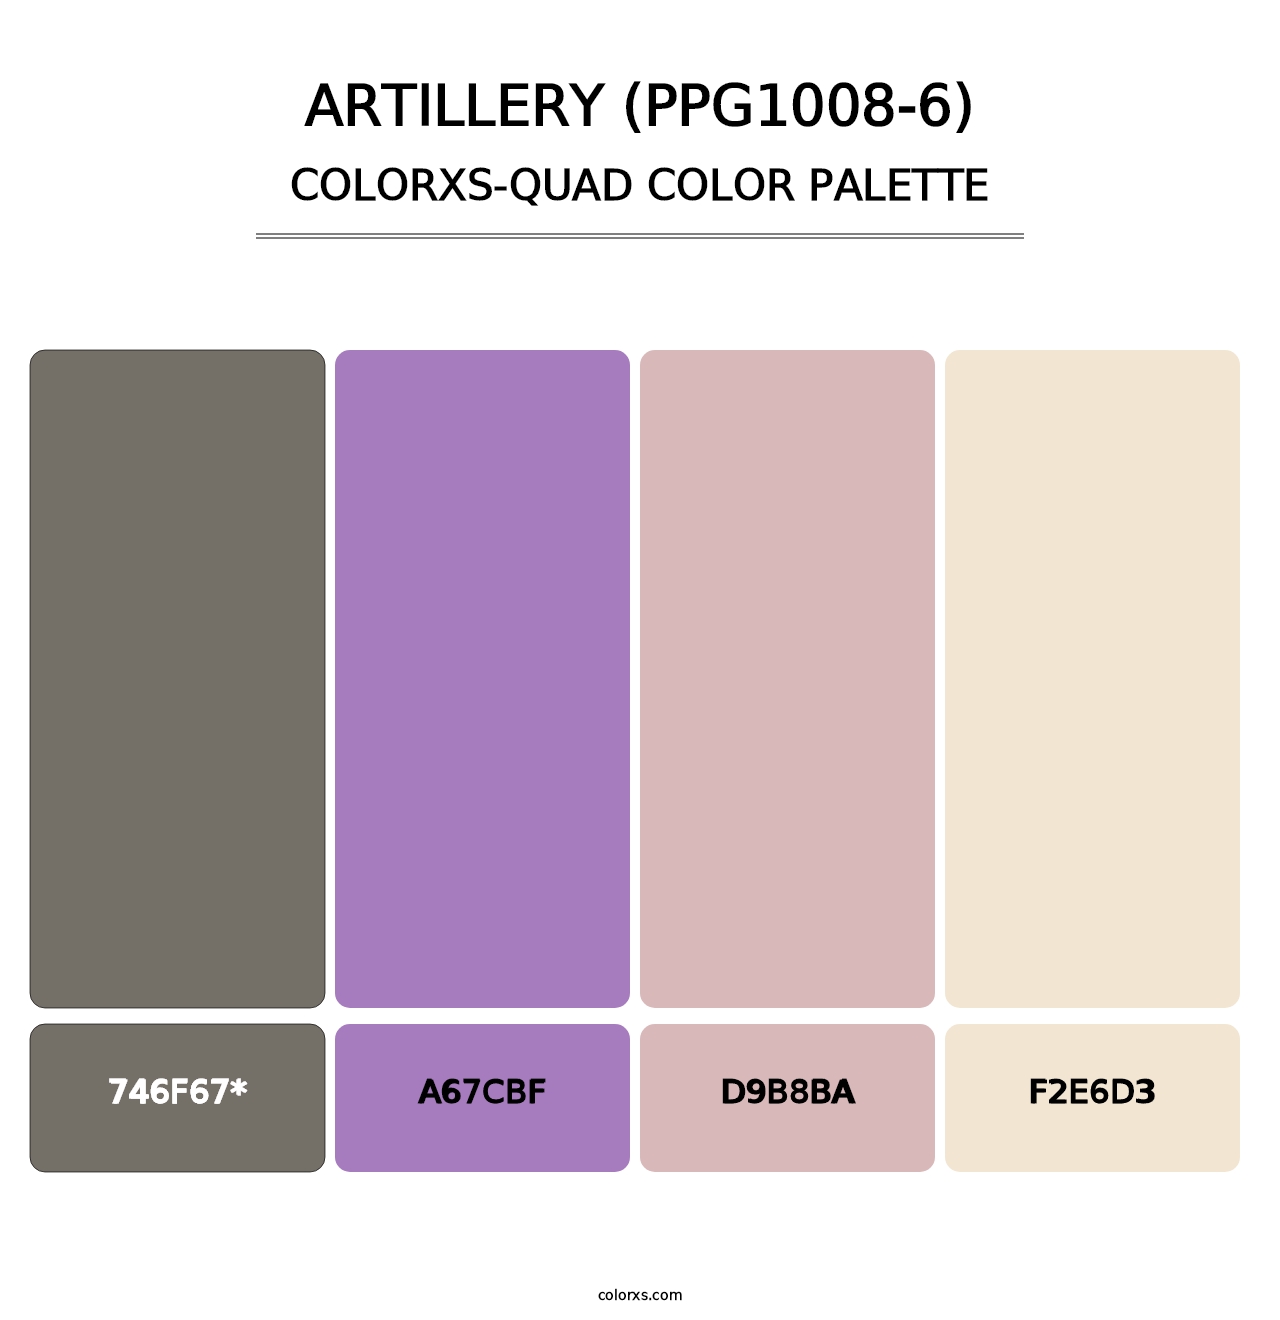 Artillery (PPG1008-6) - Colorxs Quad Palette